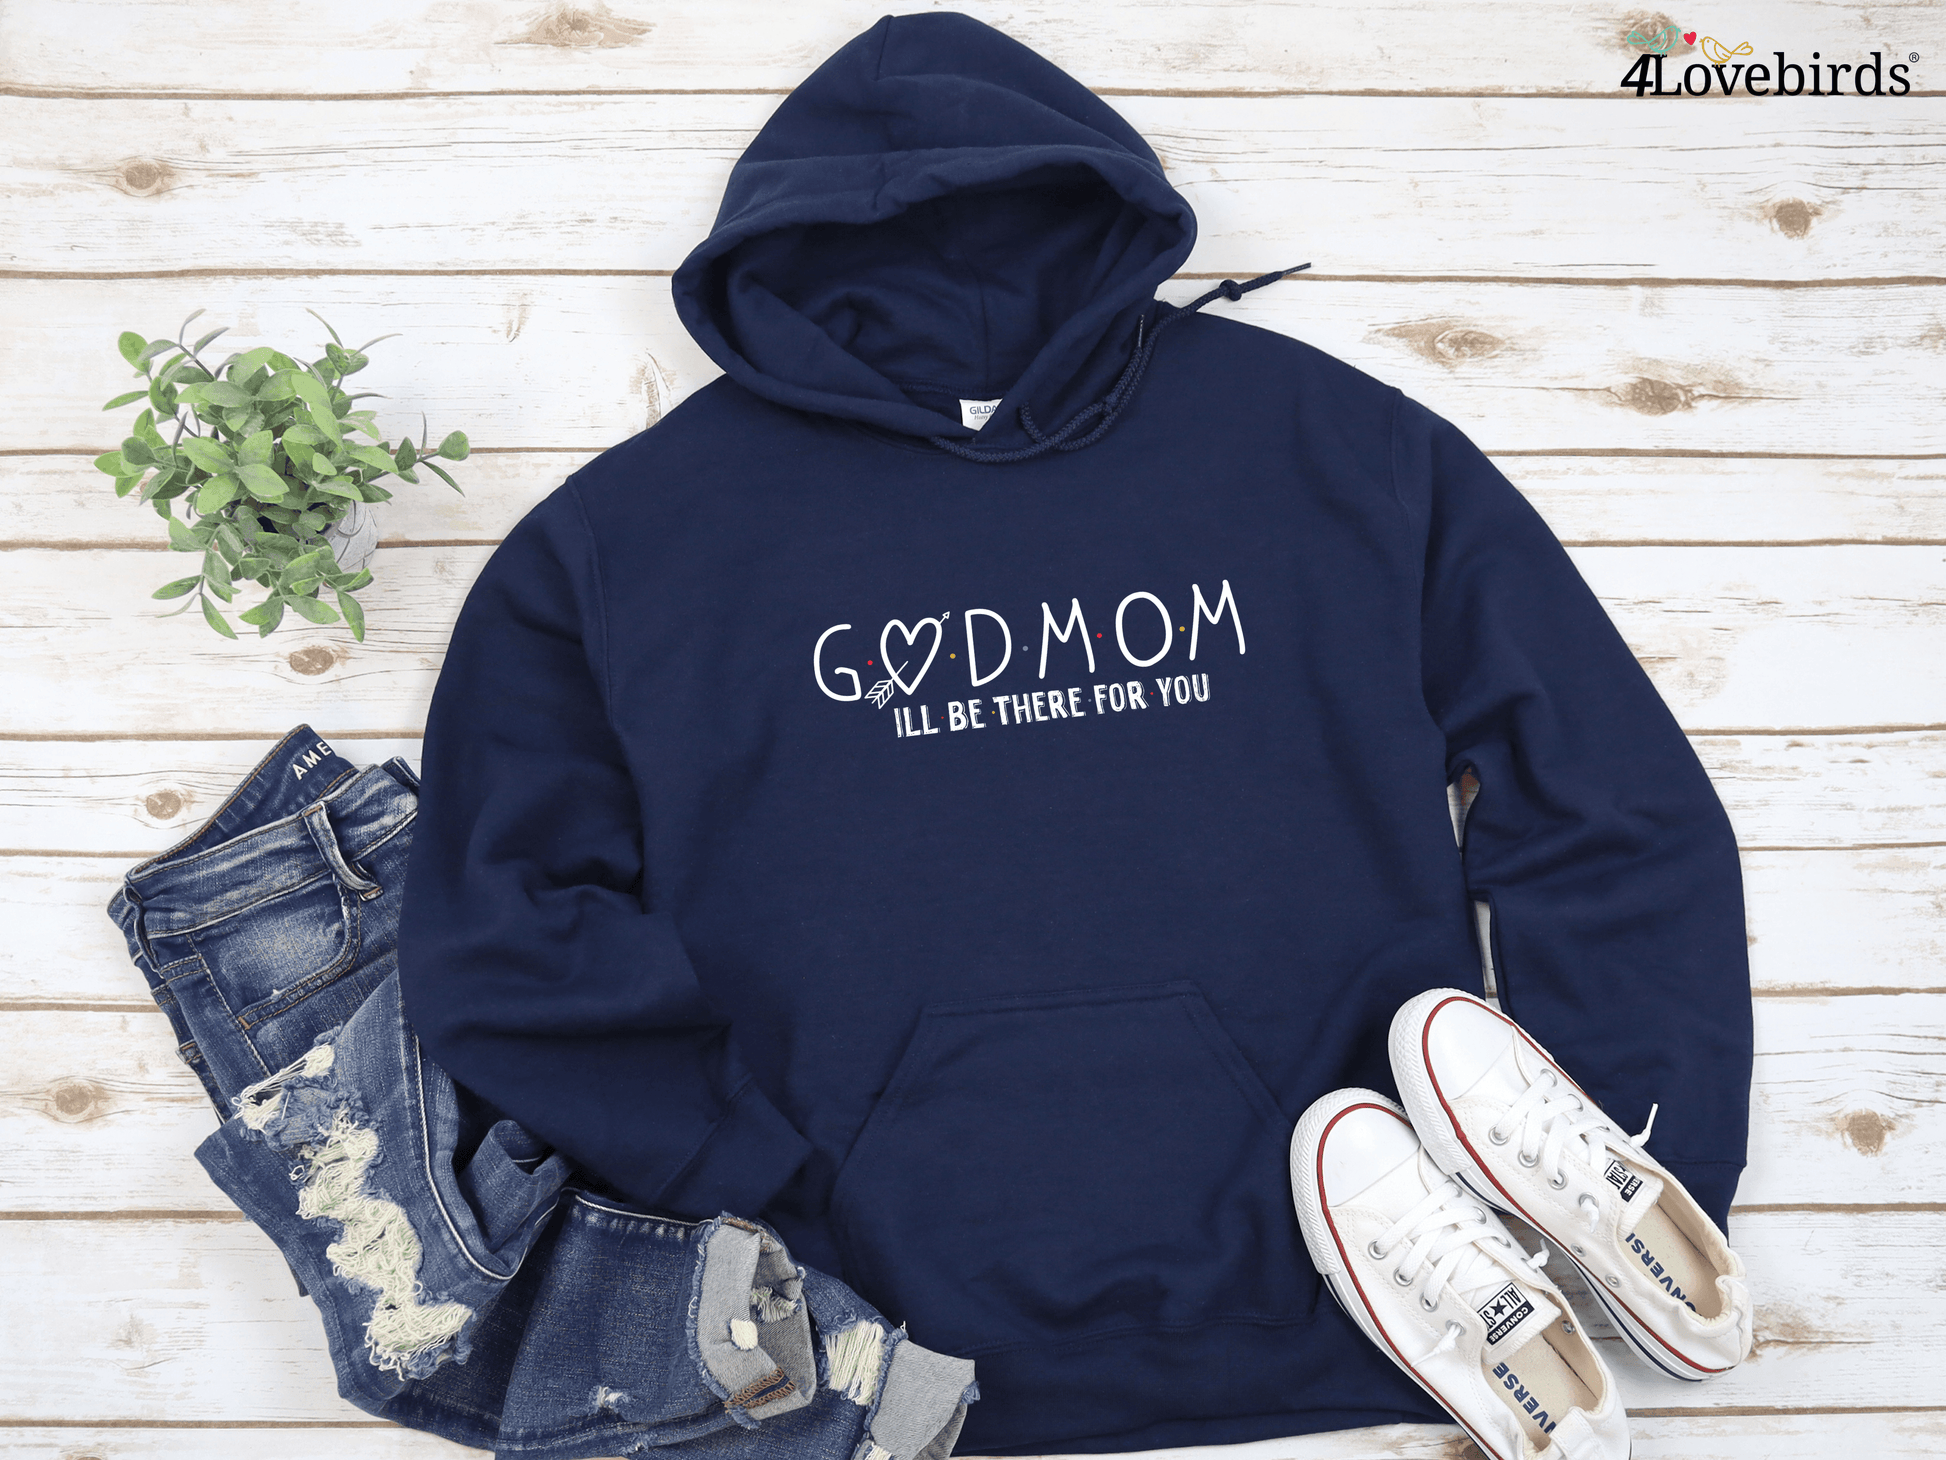 Godmom Hoodie - God Mother Gift - God Mom Gift - From God Child - God Mother Proposal - Godmother Shirt - Godmother Tshirt - Godmom Tshirt - 4Lovebirds